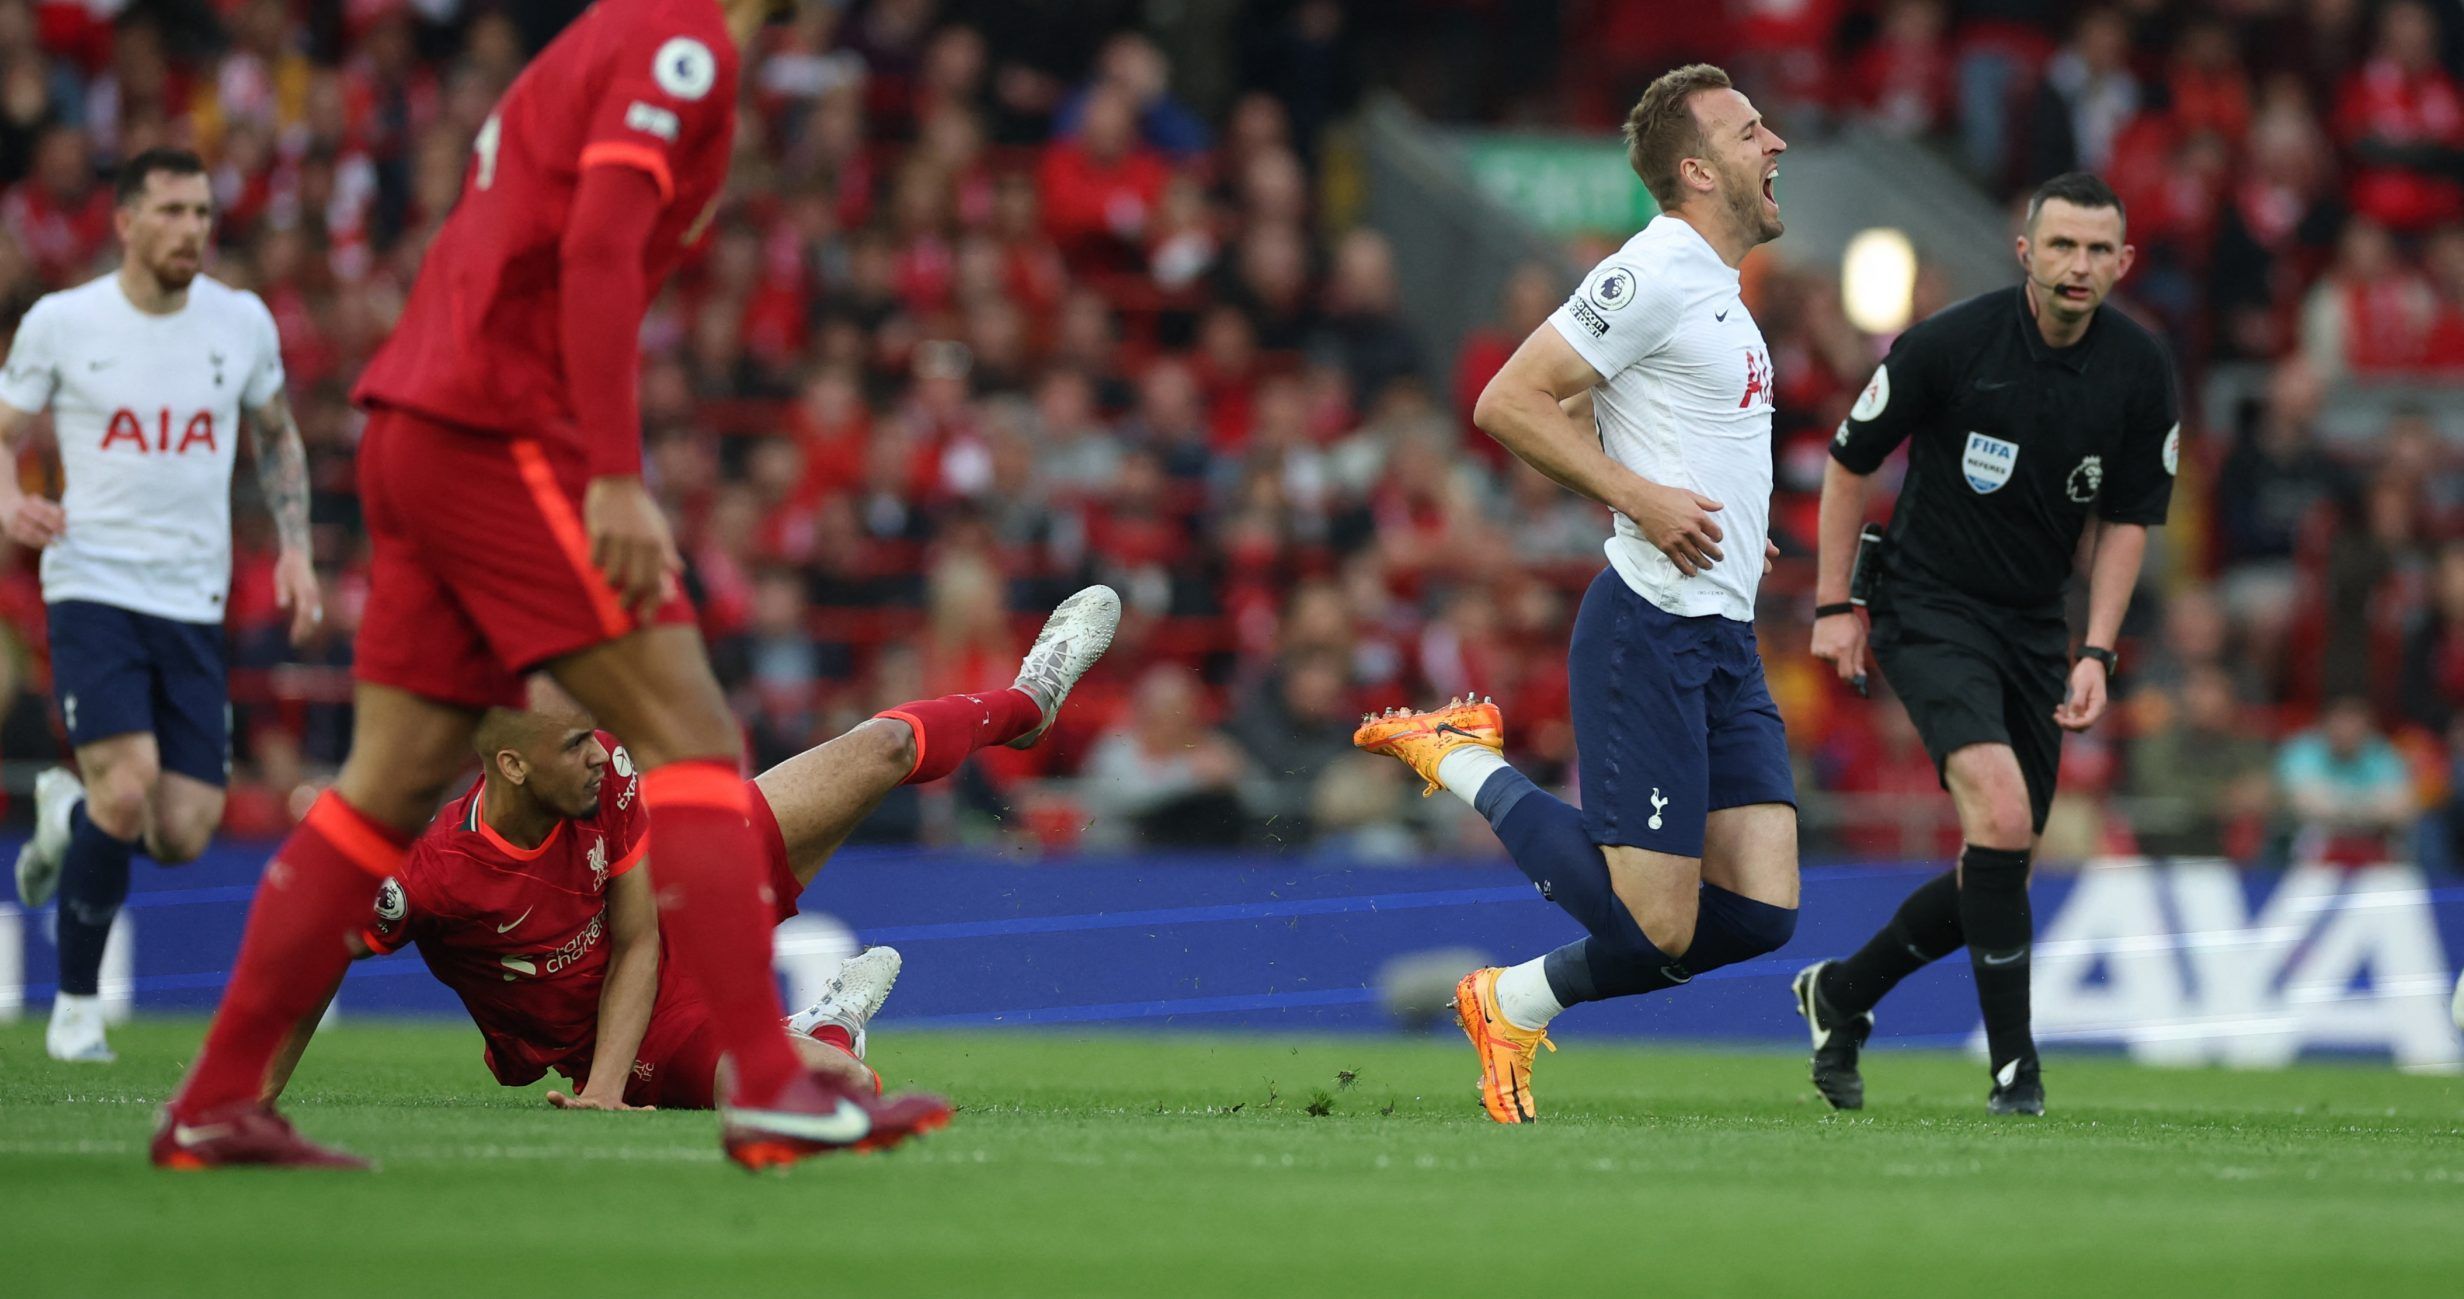 Liverpool midfielder Fabinho fouls Spurs striker Harry Kane